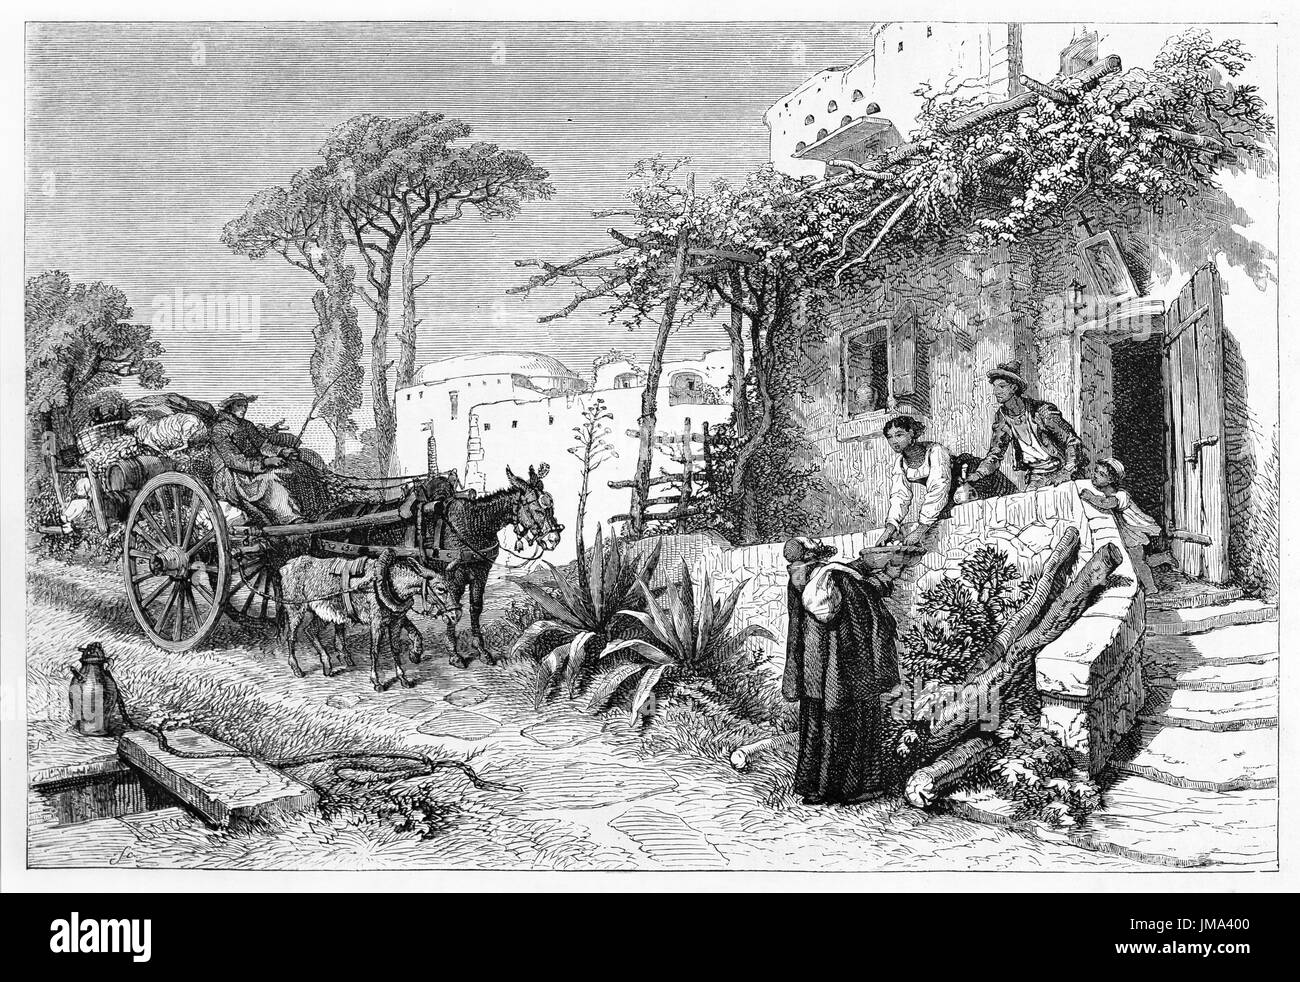 Les mendiants frères vont avec le transport parmi les vieilles maisons acceptant des cadeaux, Naples, Italie. Art de style gravure antique par Ferogio, le Tour du monde, 1861 Banque D'Images